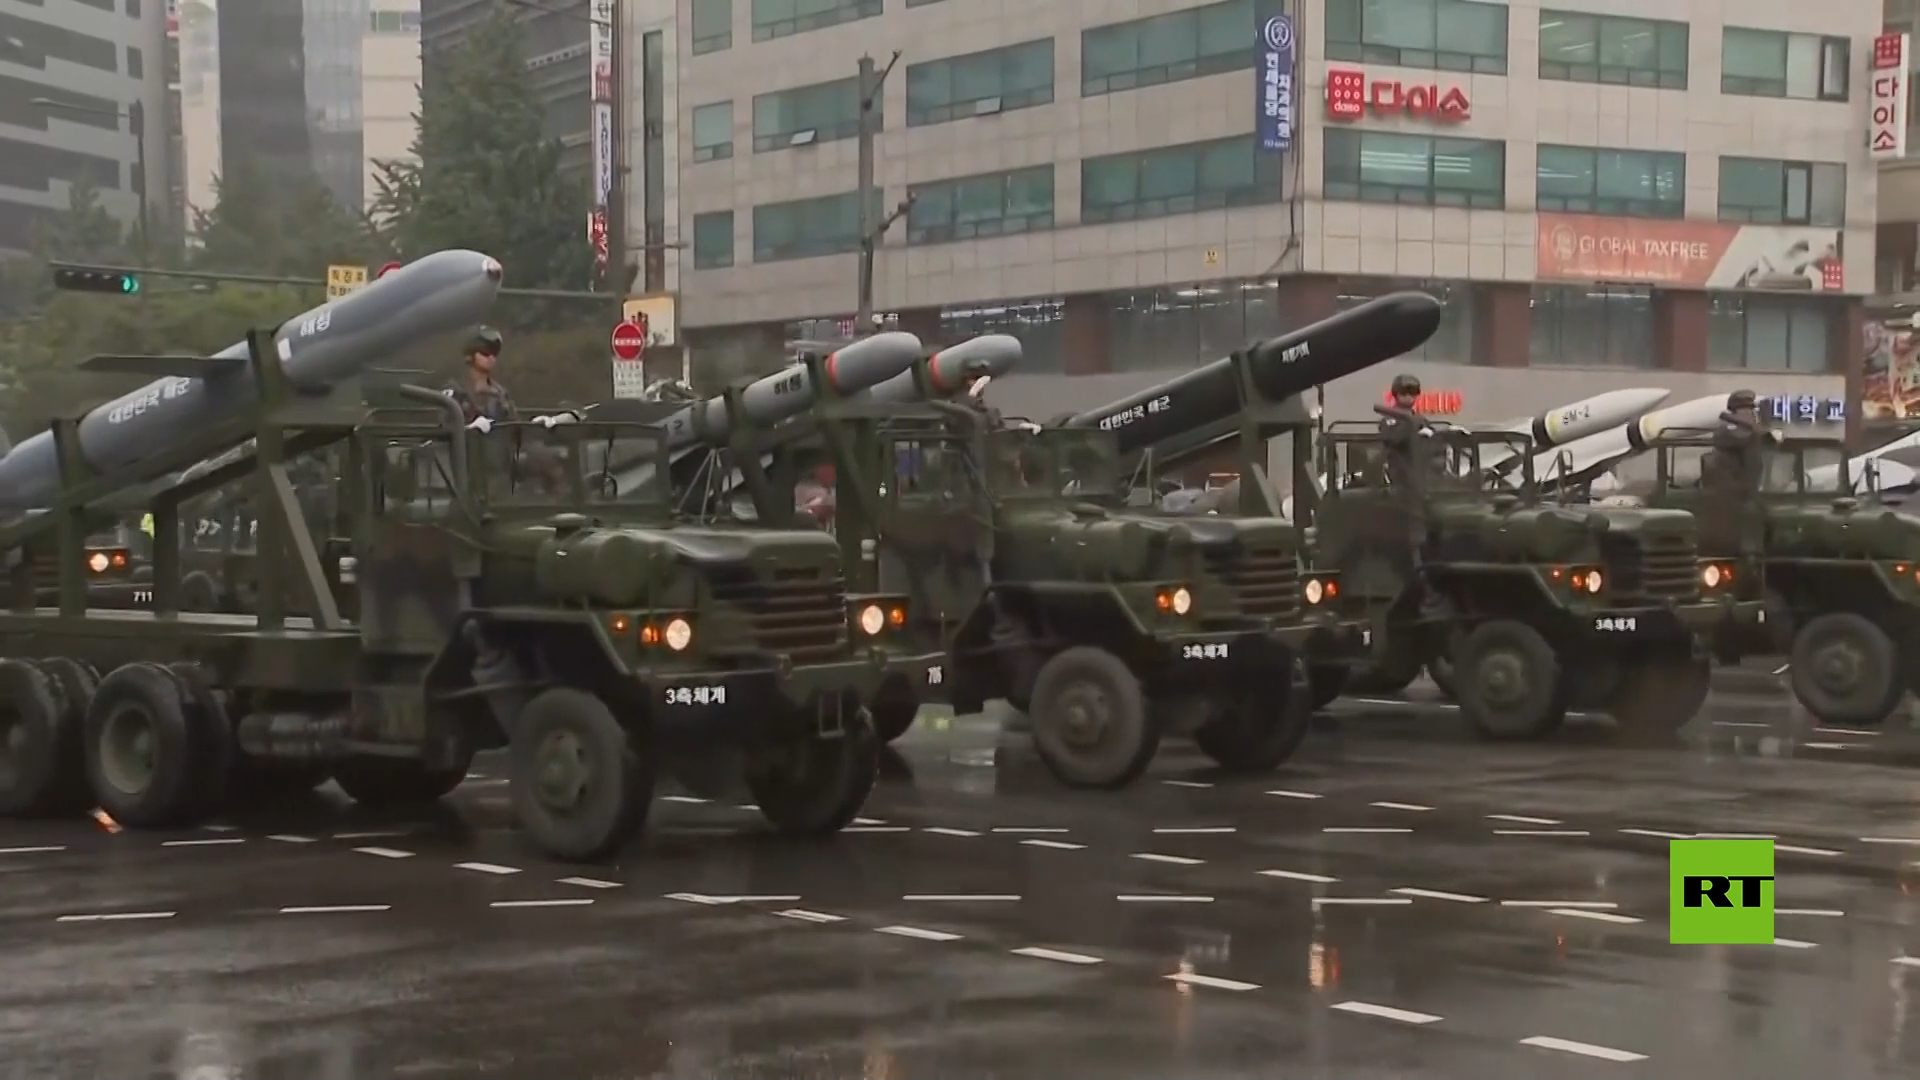 لأول مرة منذ 10 أعوام.. دبابات وصواريخ وطائرات مسيرة تستعرض في سيئول بمناسبة يوم القوات المسلحة